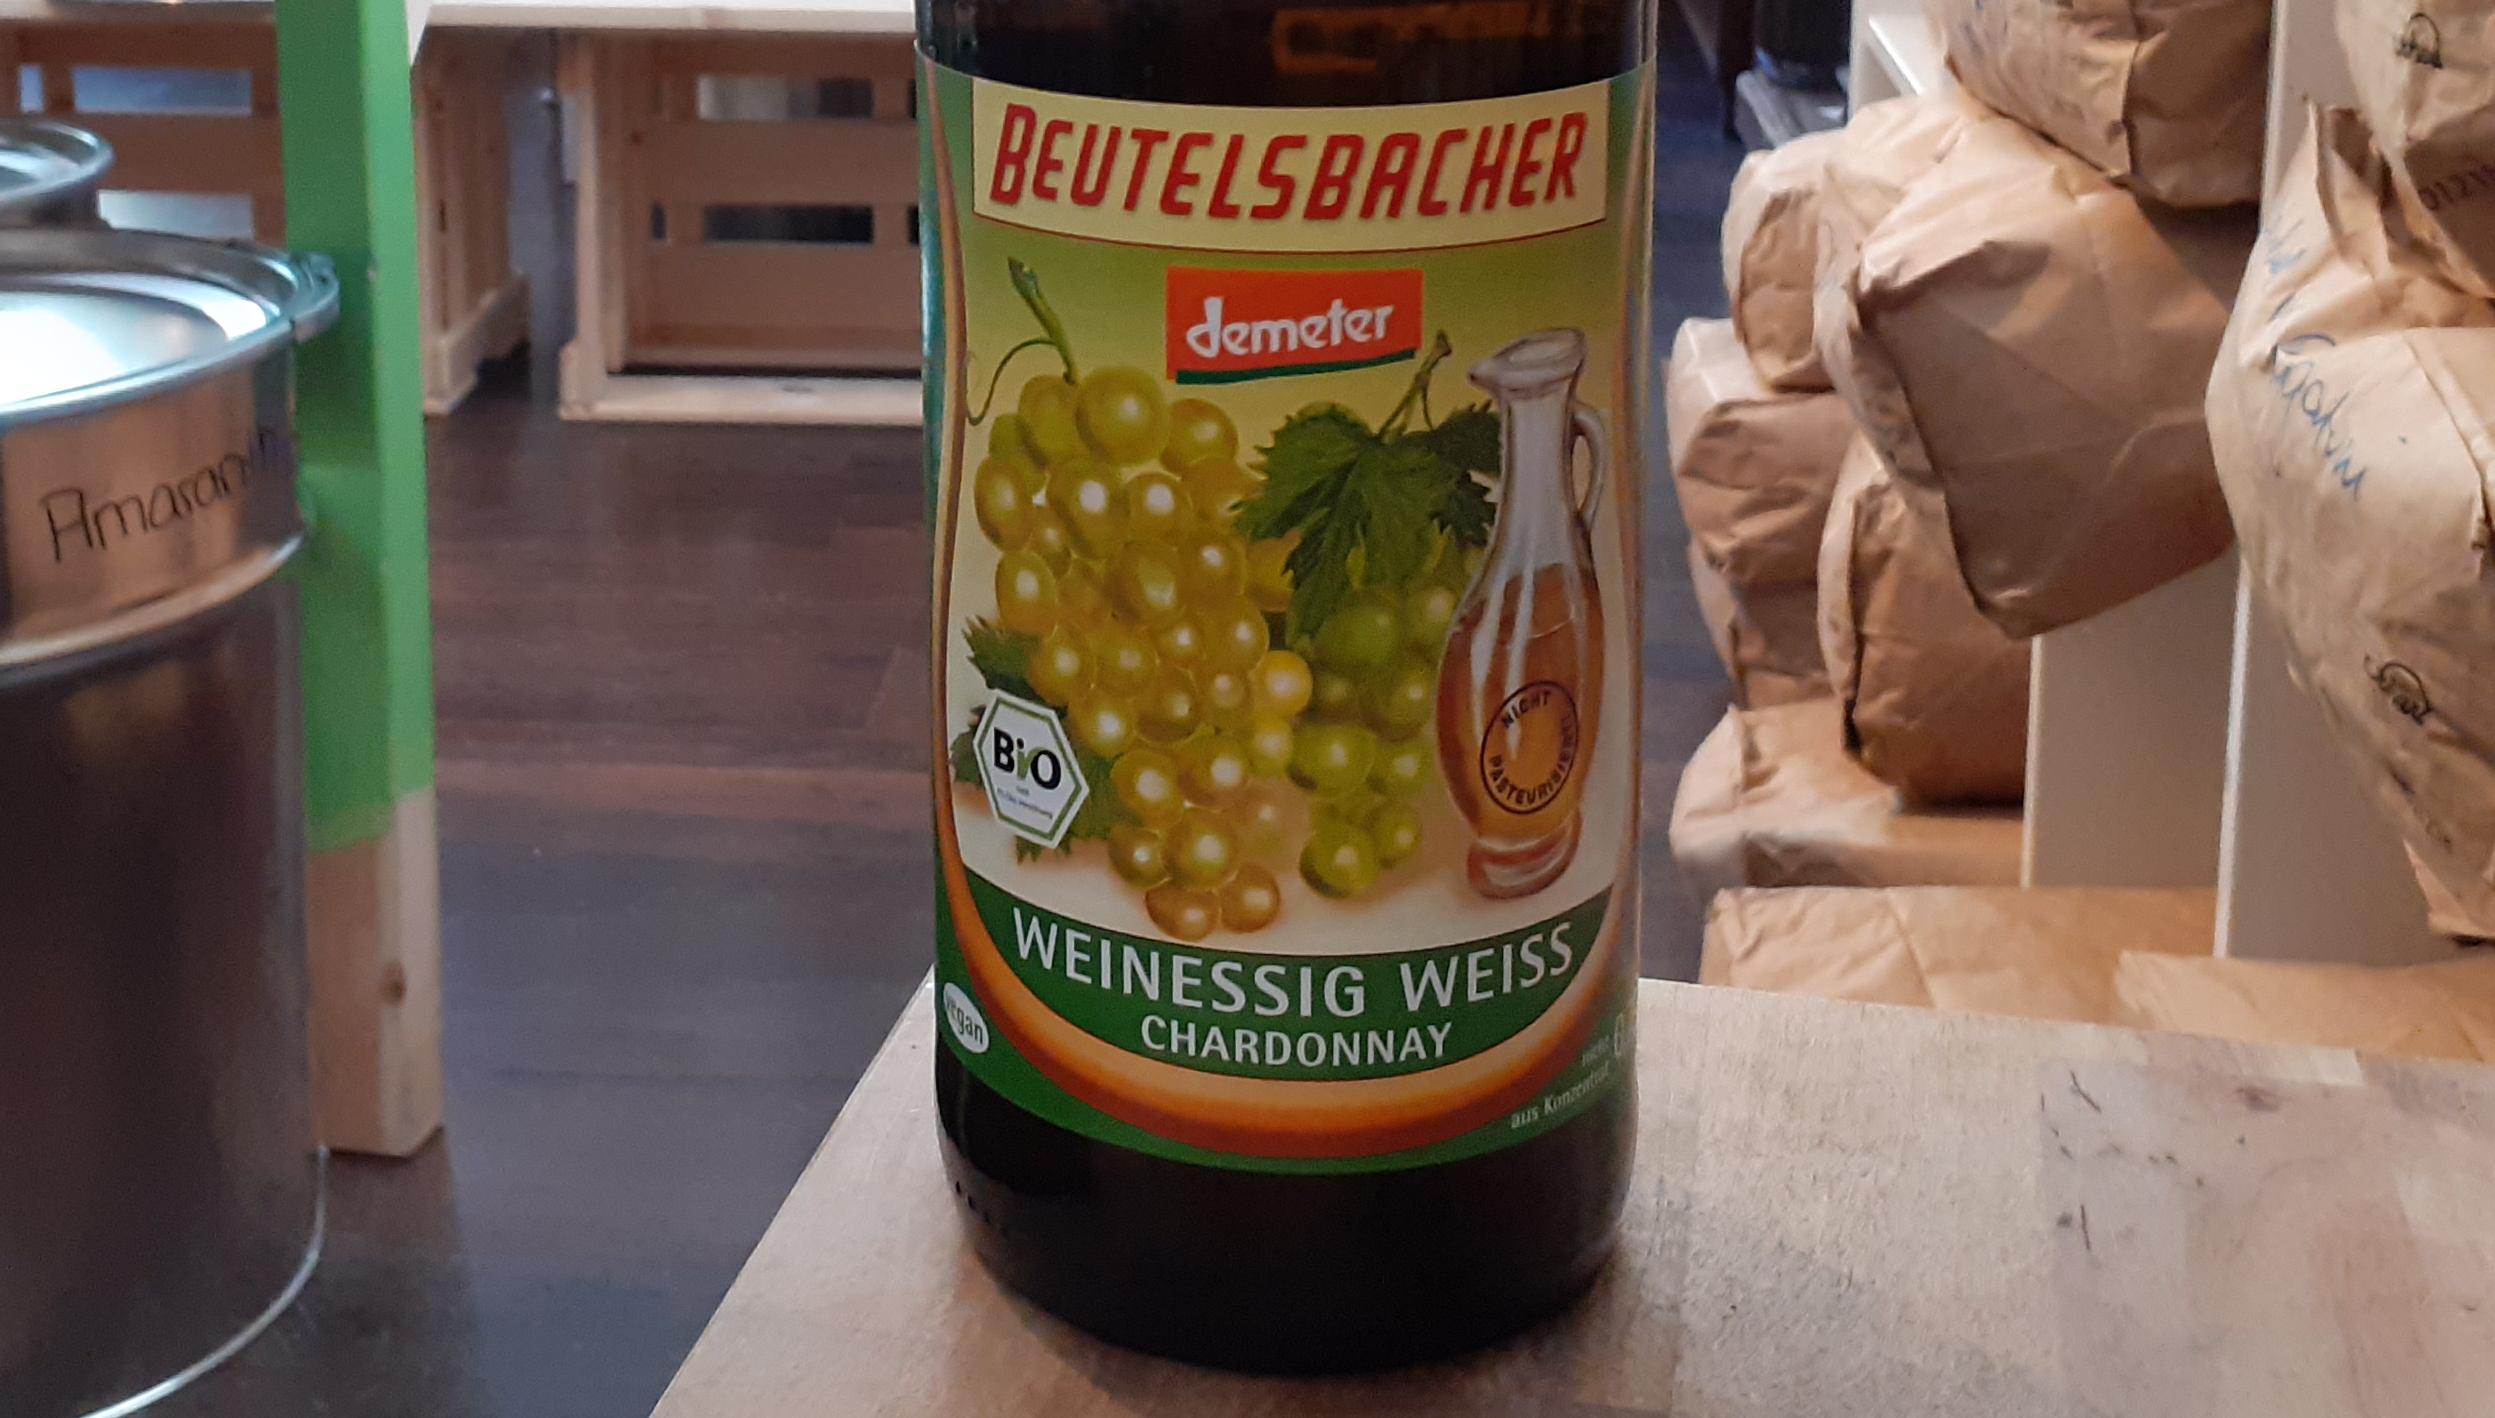 Weinessig weiss, Chardonnay